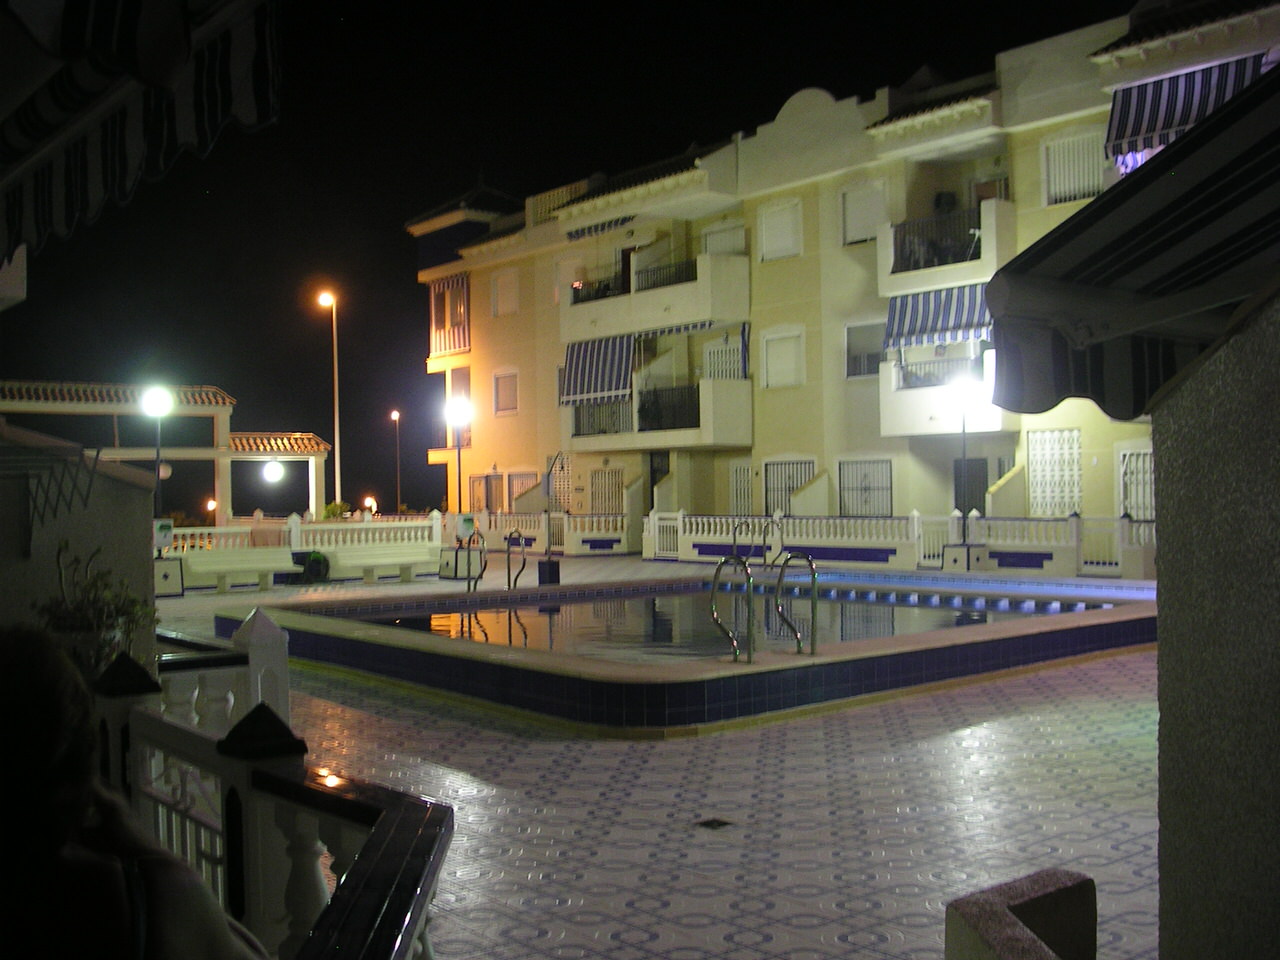 www.costaalquiler.com - vista nocturna de la piscina y patio del apartamento turistico de Torrevieja en alquiler